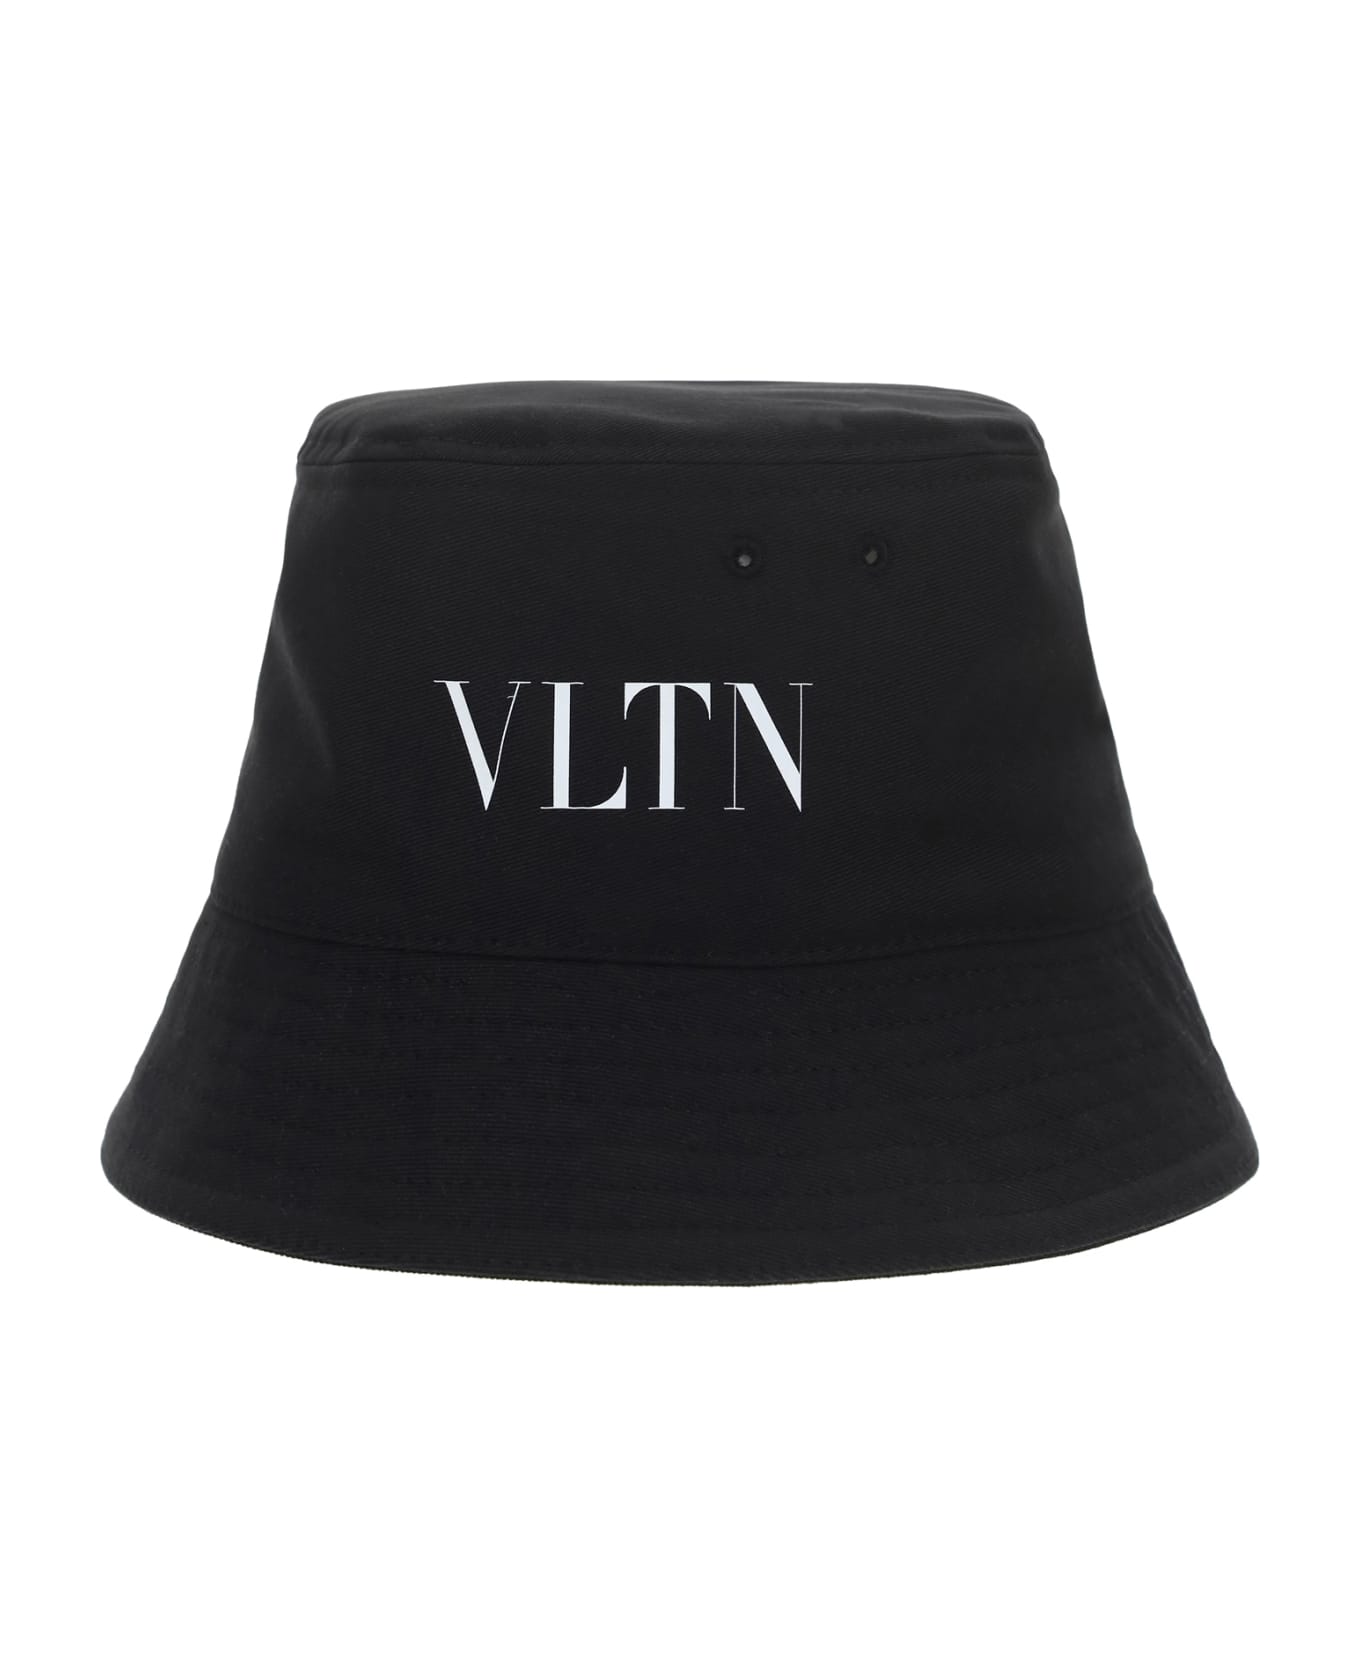 Valentino Garavani 'vltn' Bucket Hat - Nerobianco 帽子